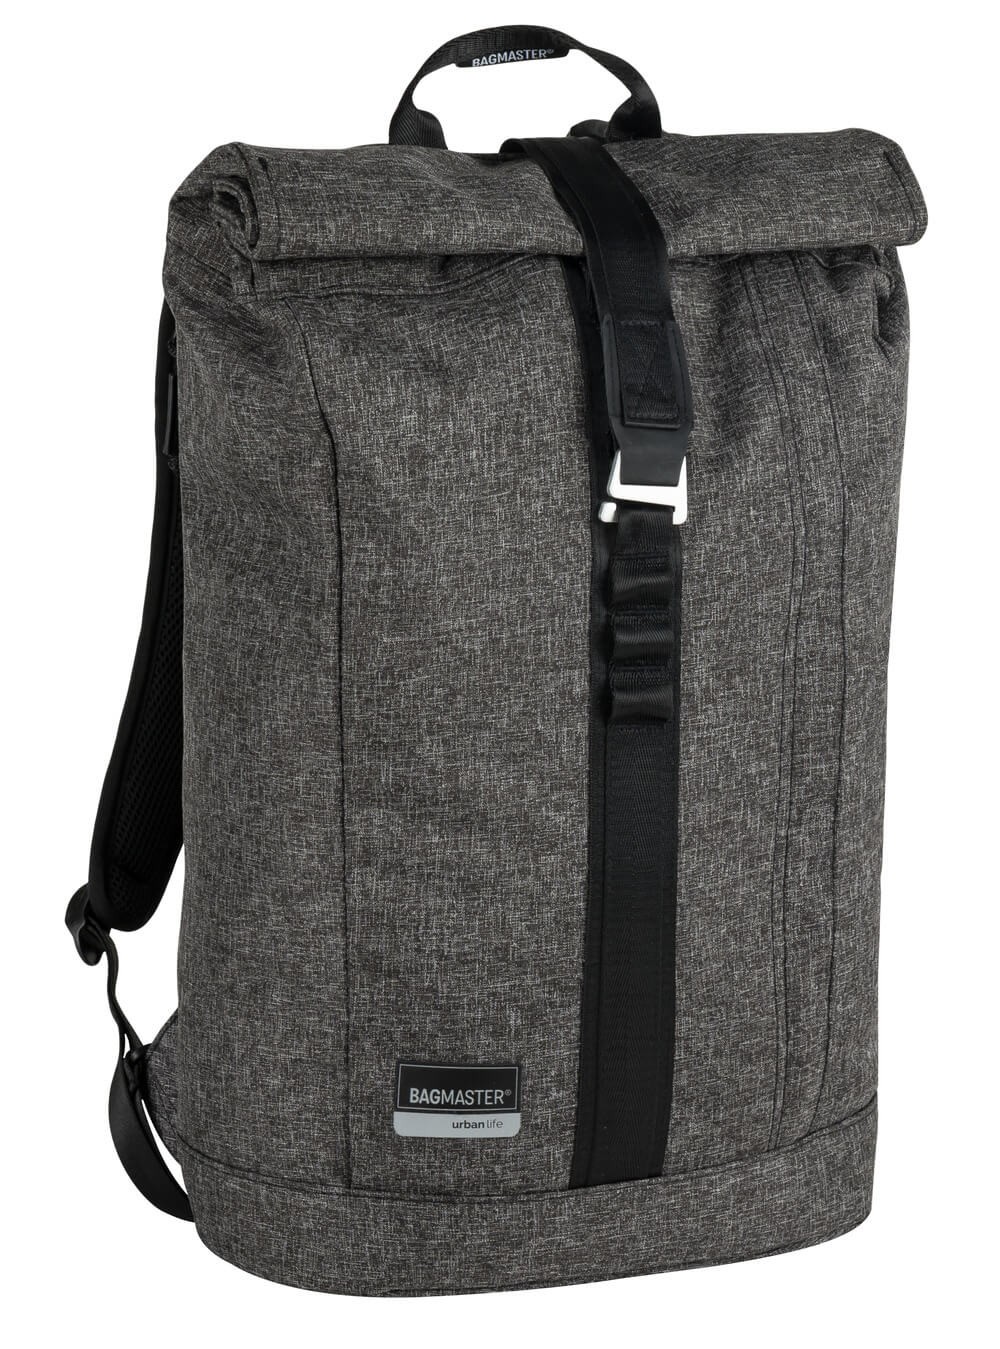 Městský batoh QUANTUM 9 A - tmavě šedý